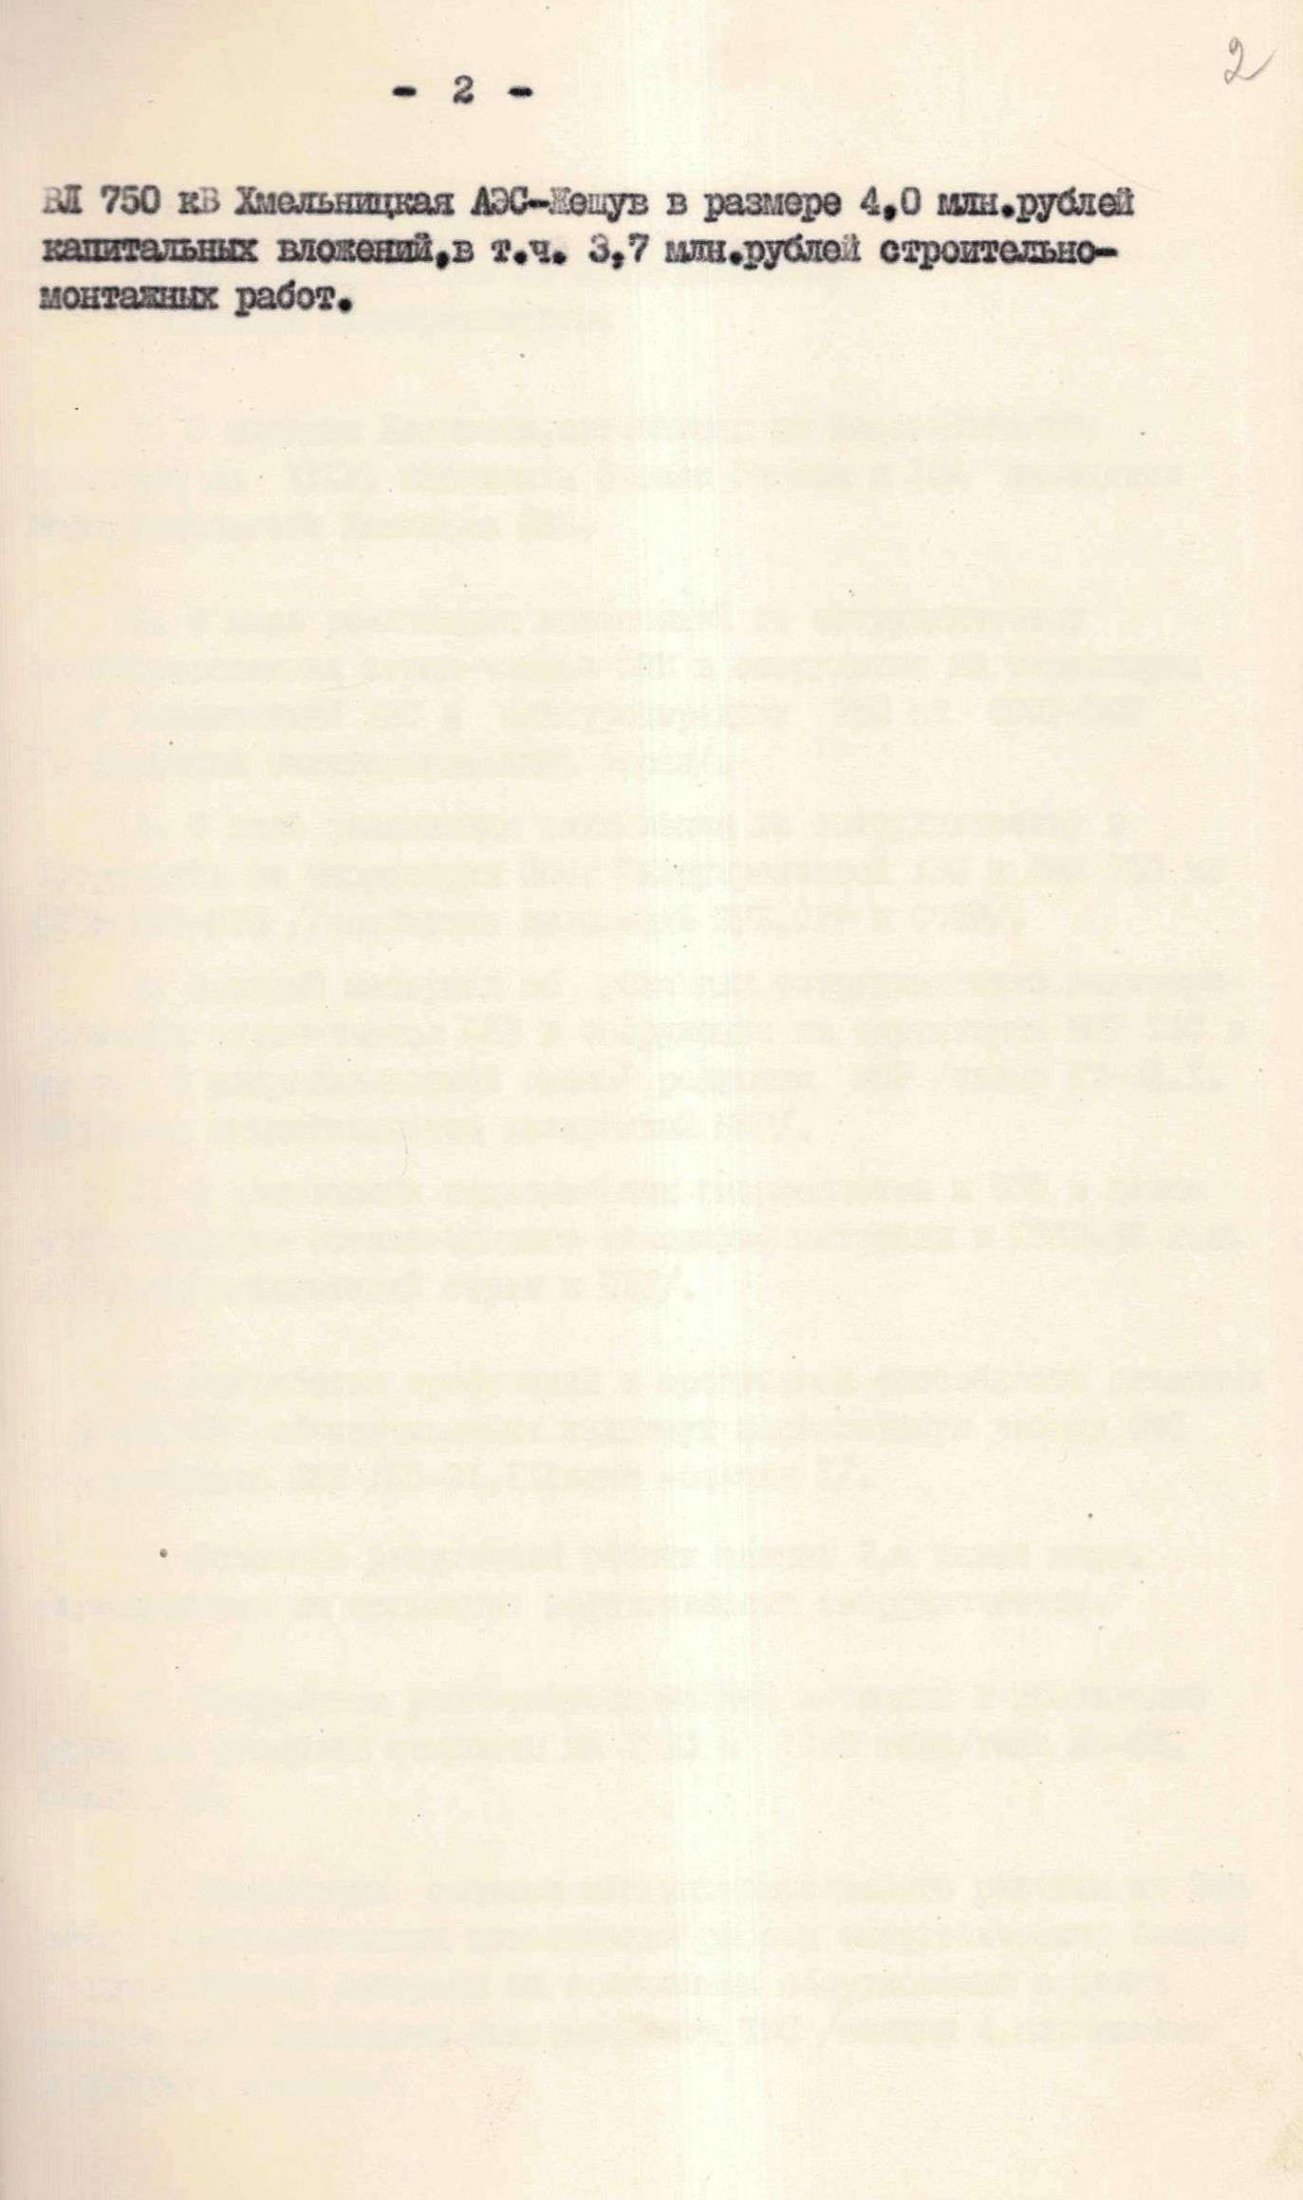 Пропозиції до порядку денного 61 засідання постійно діючої комісії Ради економічної взаємодопомоги (РЕВ) по електроенергії про хід реалізації угоди про співробітництво зацікавлених країн-членів РЕВ у співробітництві у споруджені на території СРСР-ПНР лінії електропередачі Хмельницька АЕС - Жешув. 1 жовтня 1982 р.